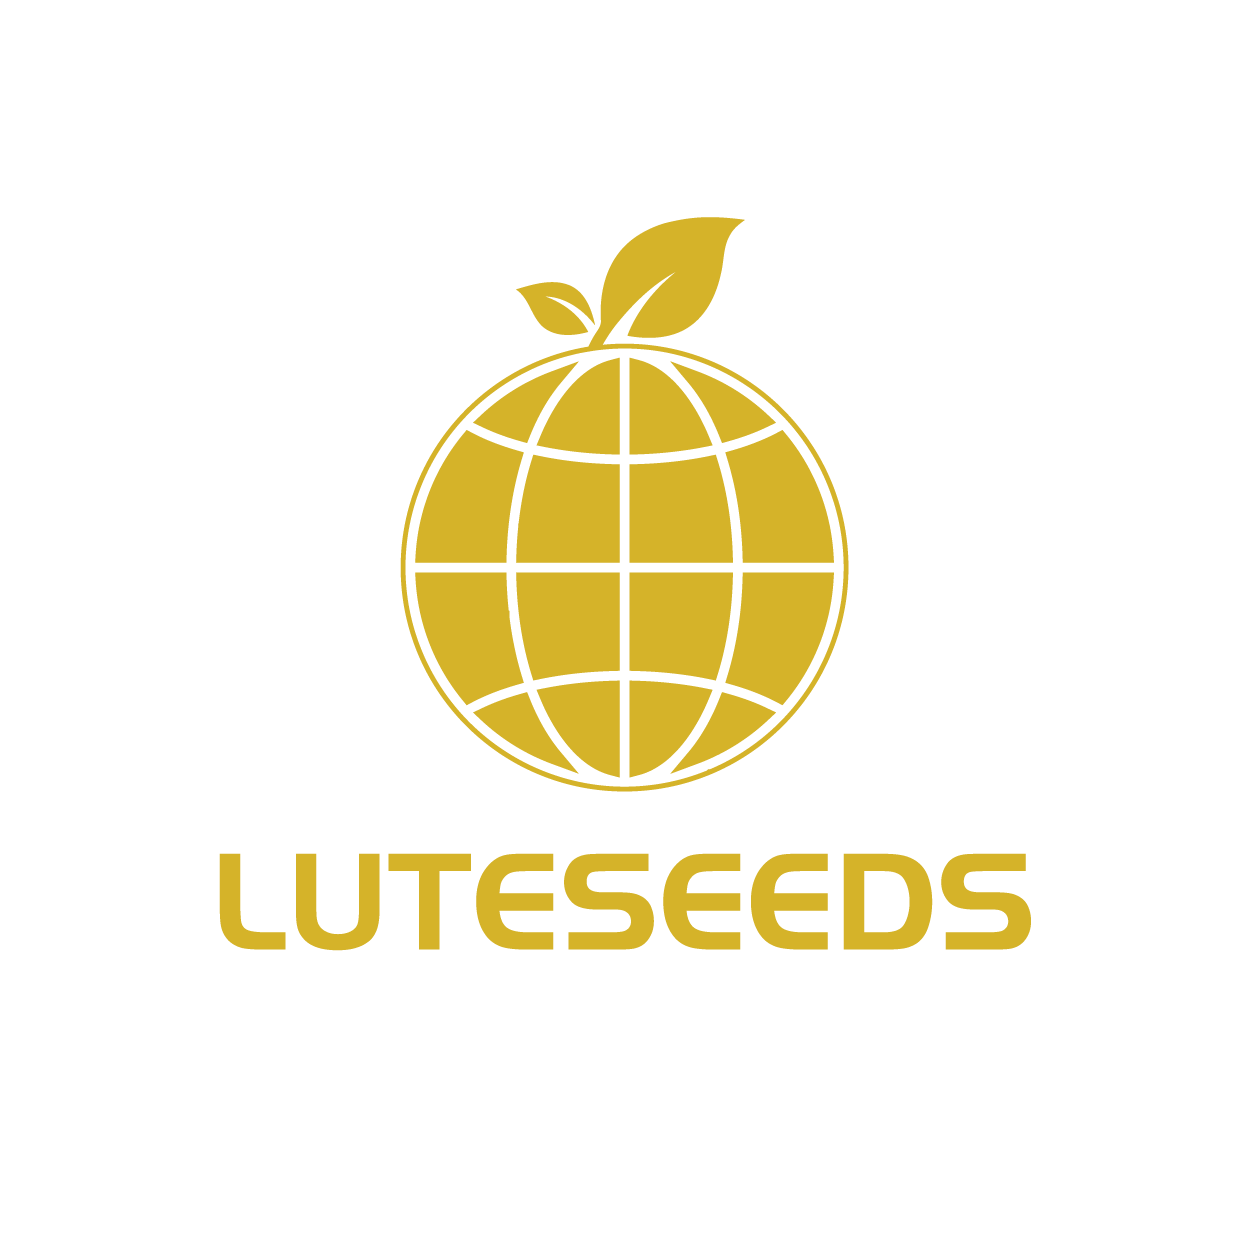 LUTESEEDS